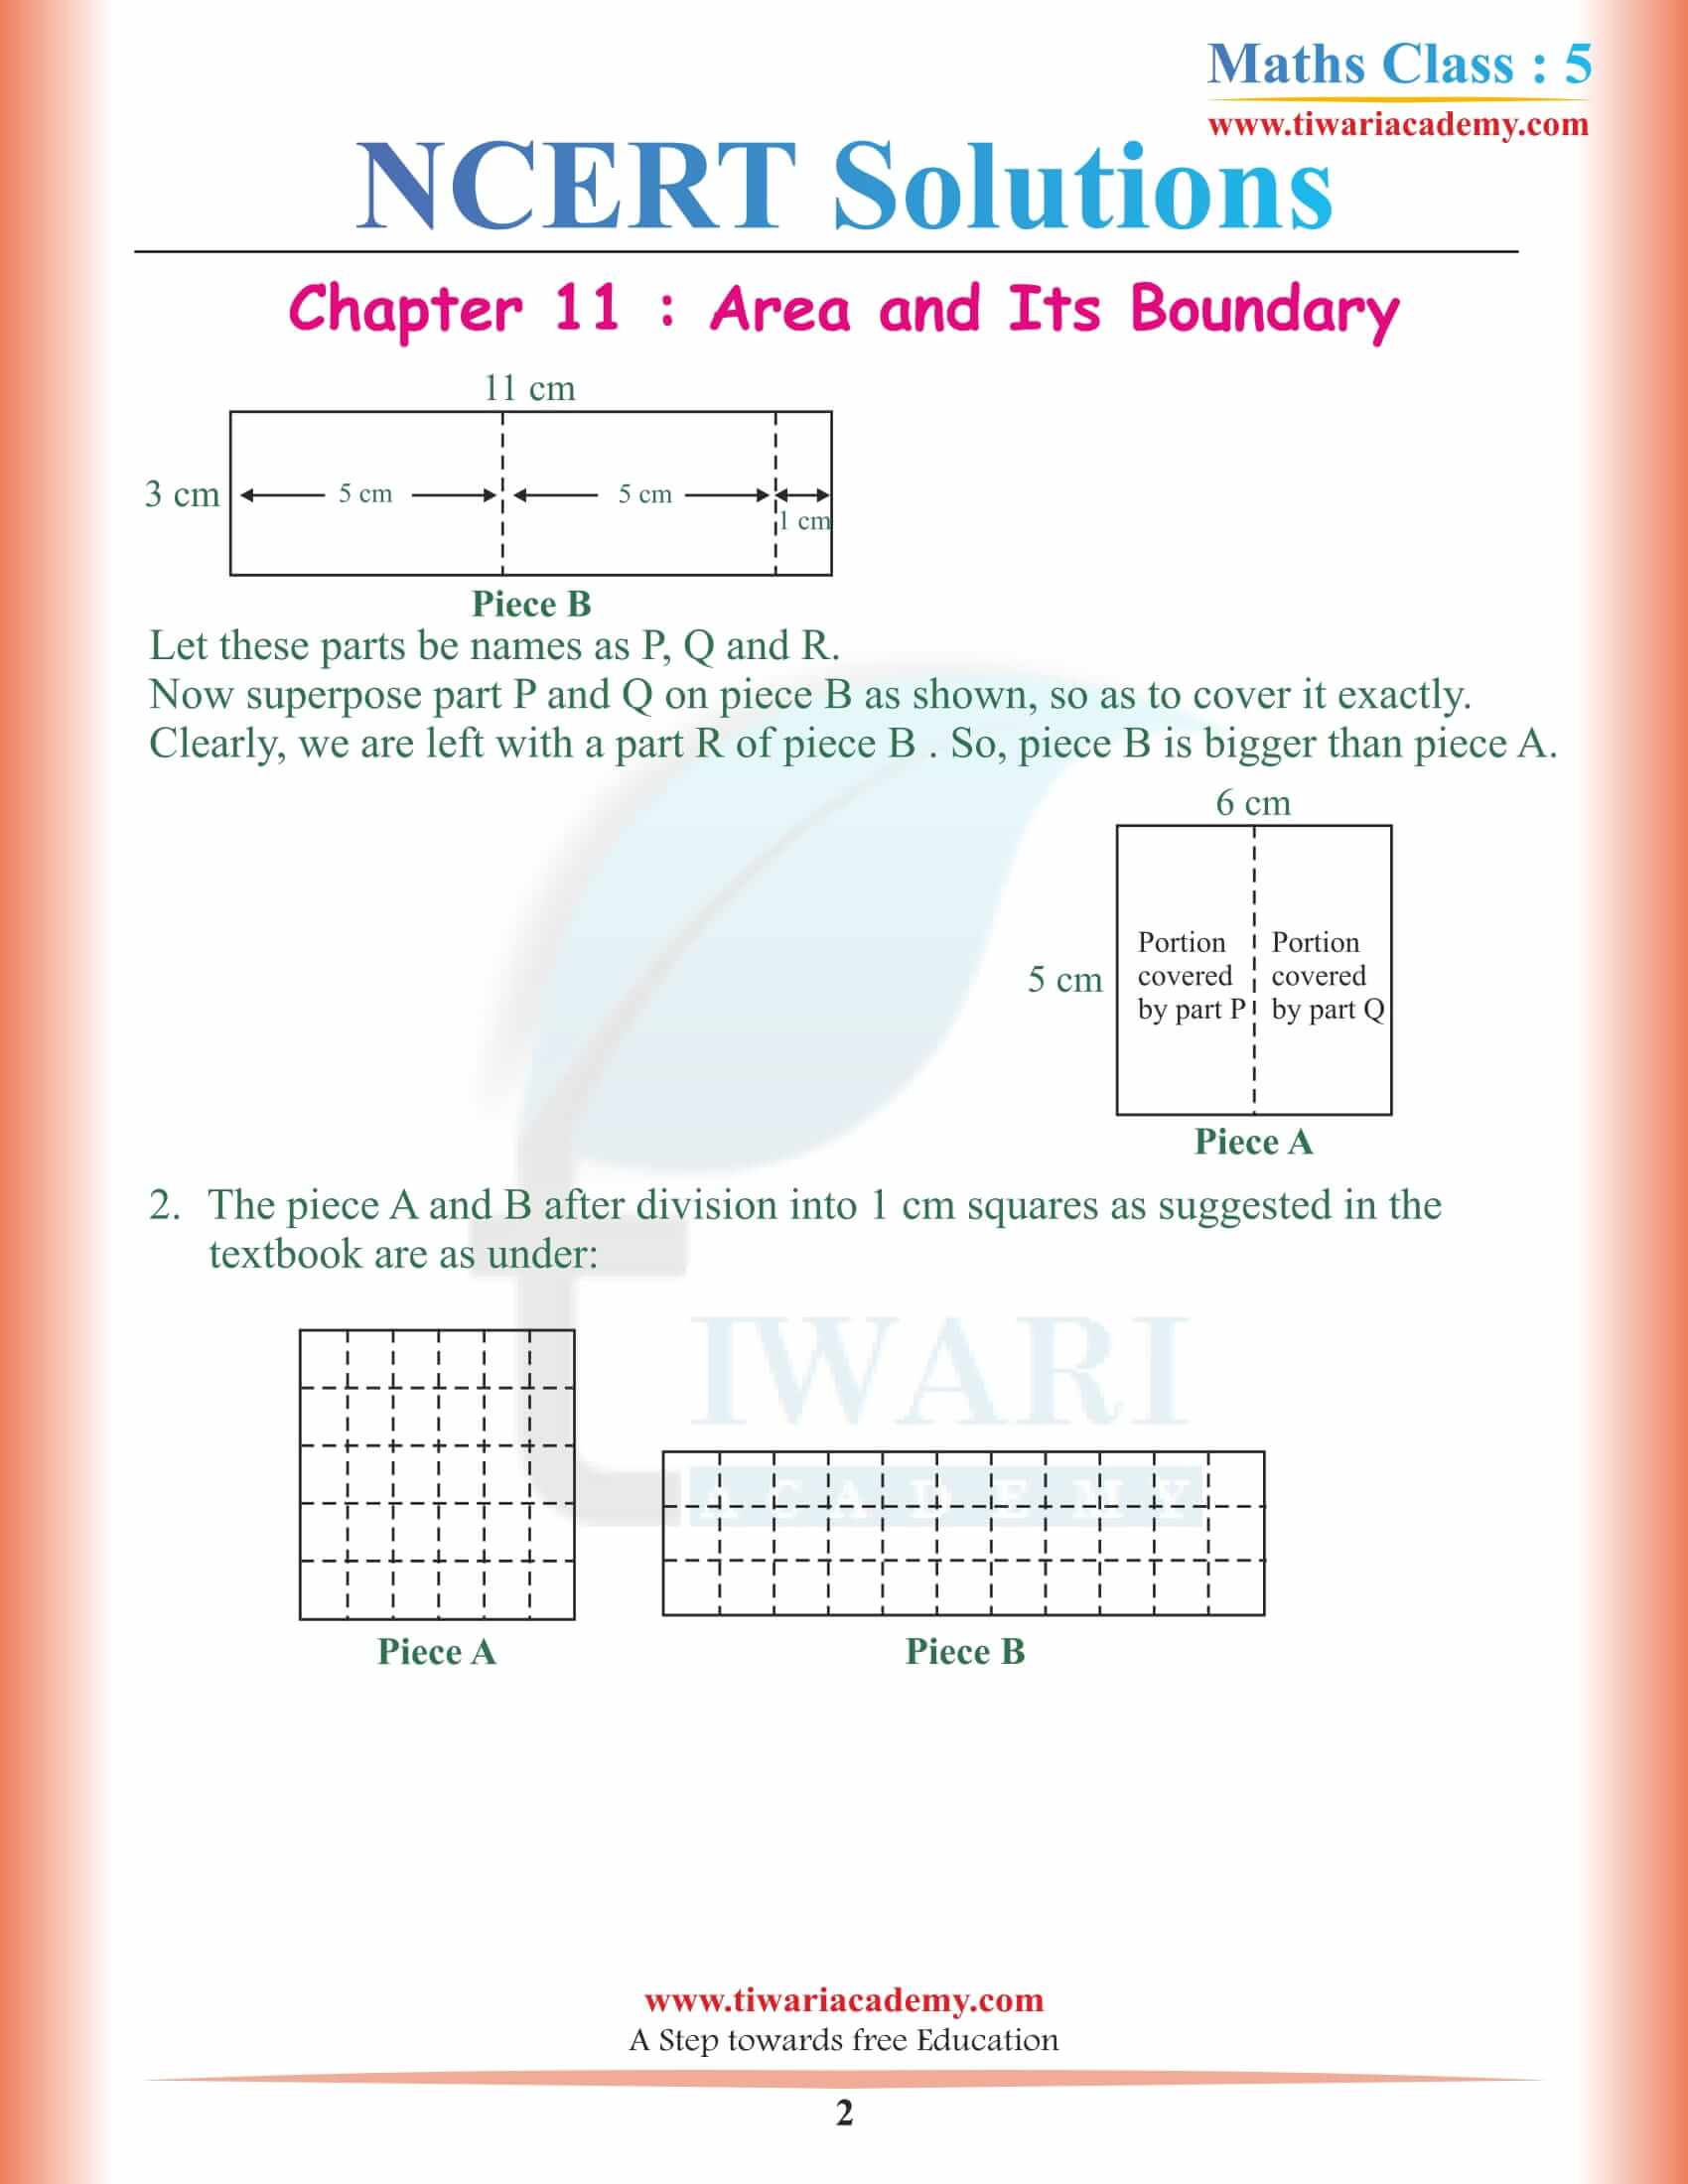 NCERT Solutions for Class 5 Maths Chapter 11